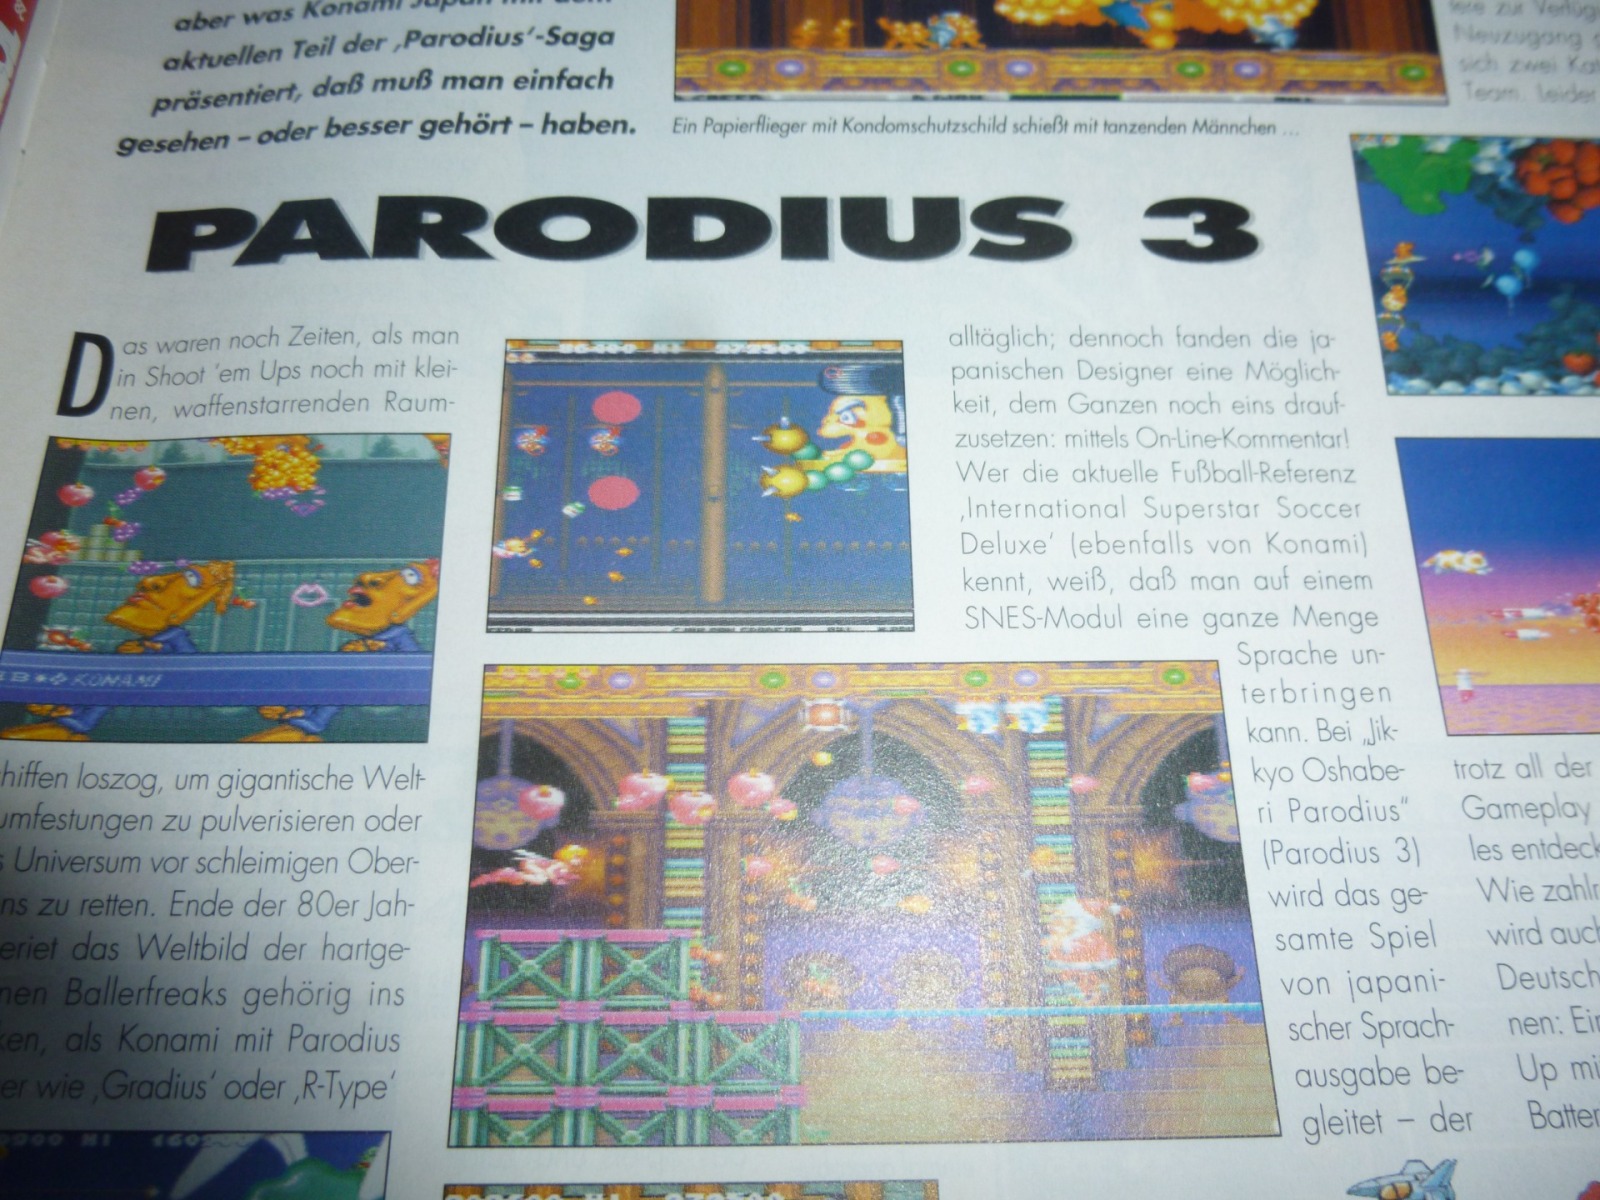 TOTAL Das unabhängige Magazin - 100 Nintendo - Ausgabe 3/96 1996 8